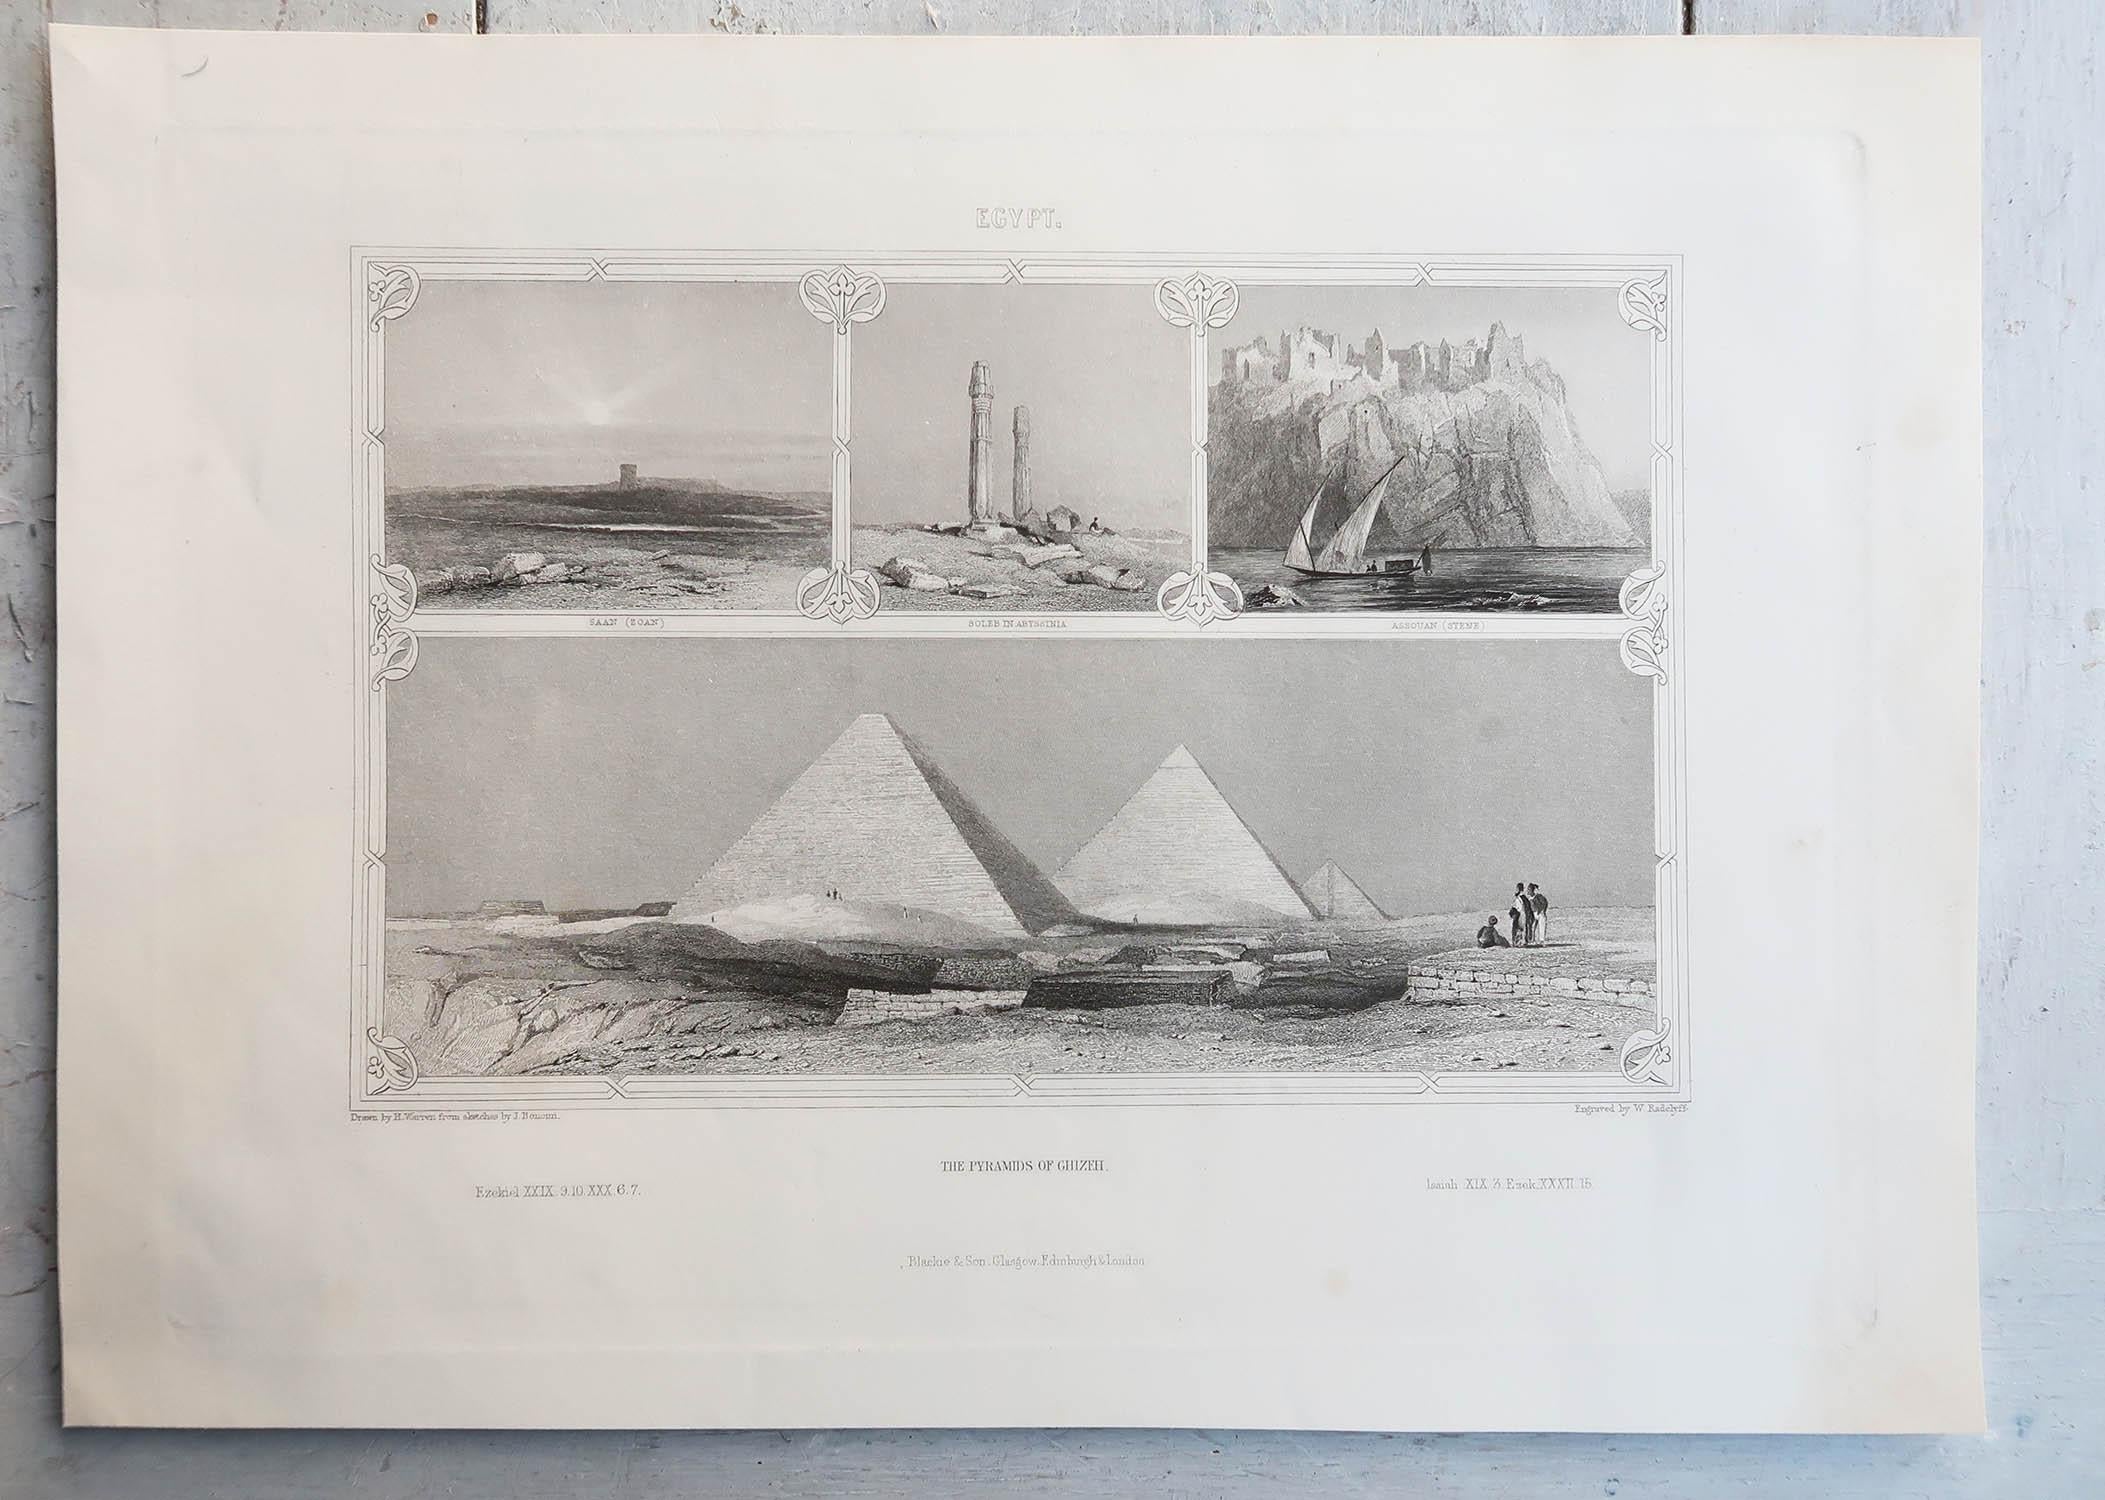 English Original Antique Print of The Pyramids of Giza, Egypt. C.1850